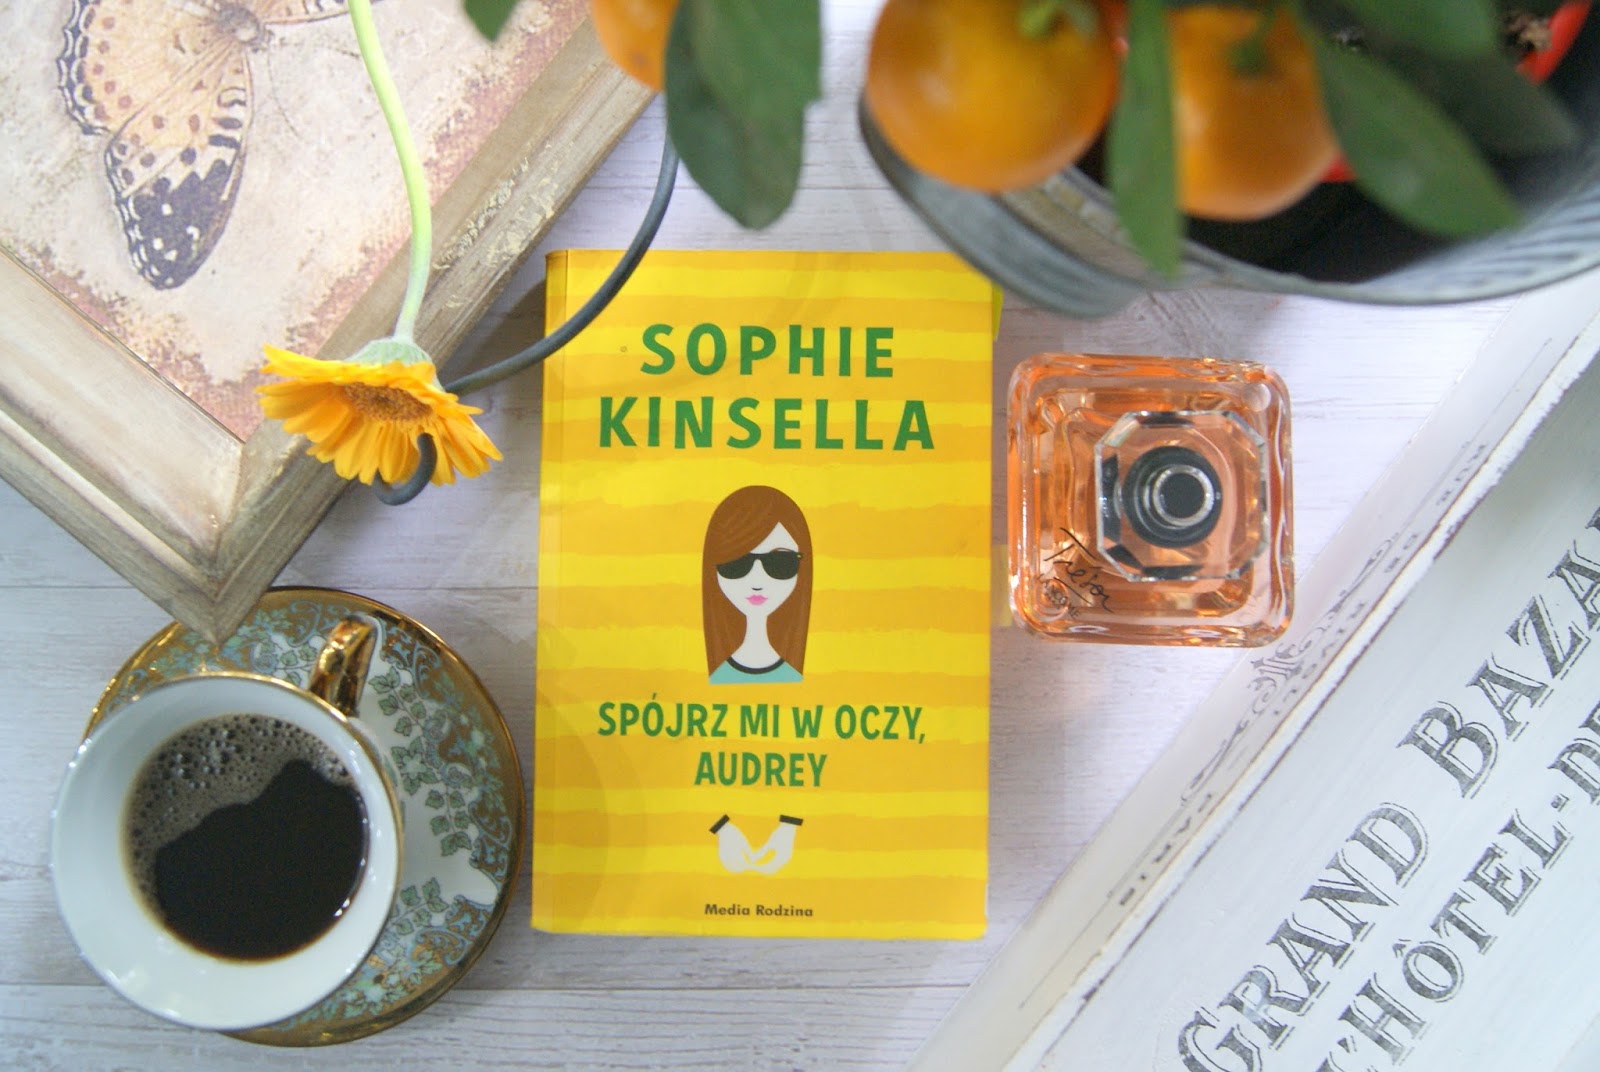 "SPÓJRZ MI W OCZY, AUDREY" - SOPHIE KINSELLA | BOOK TOUR